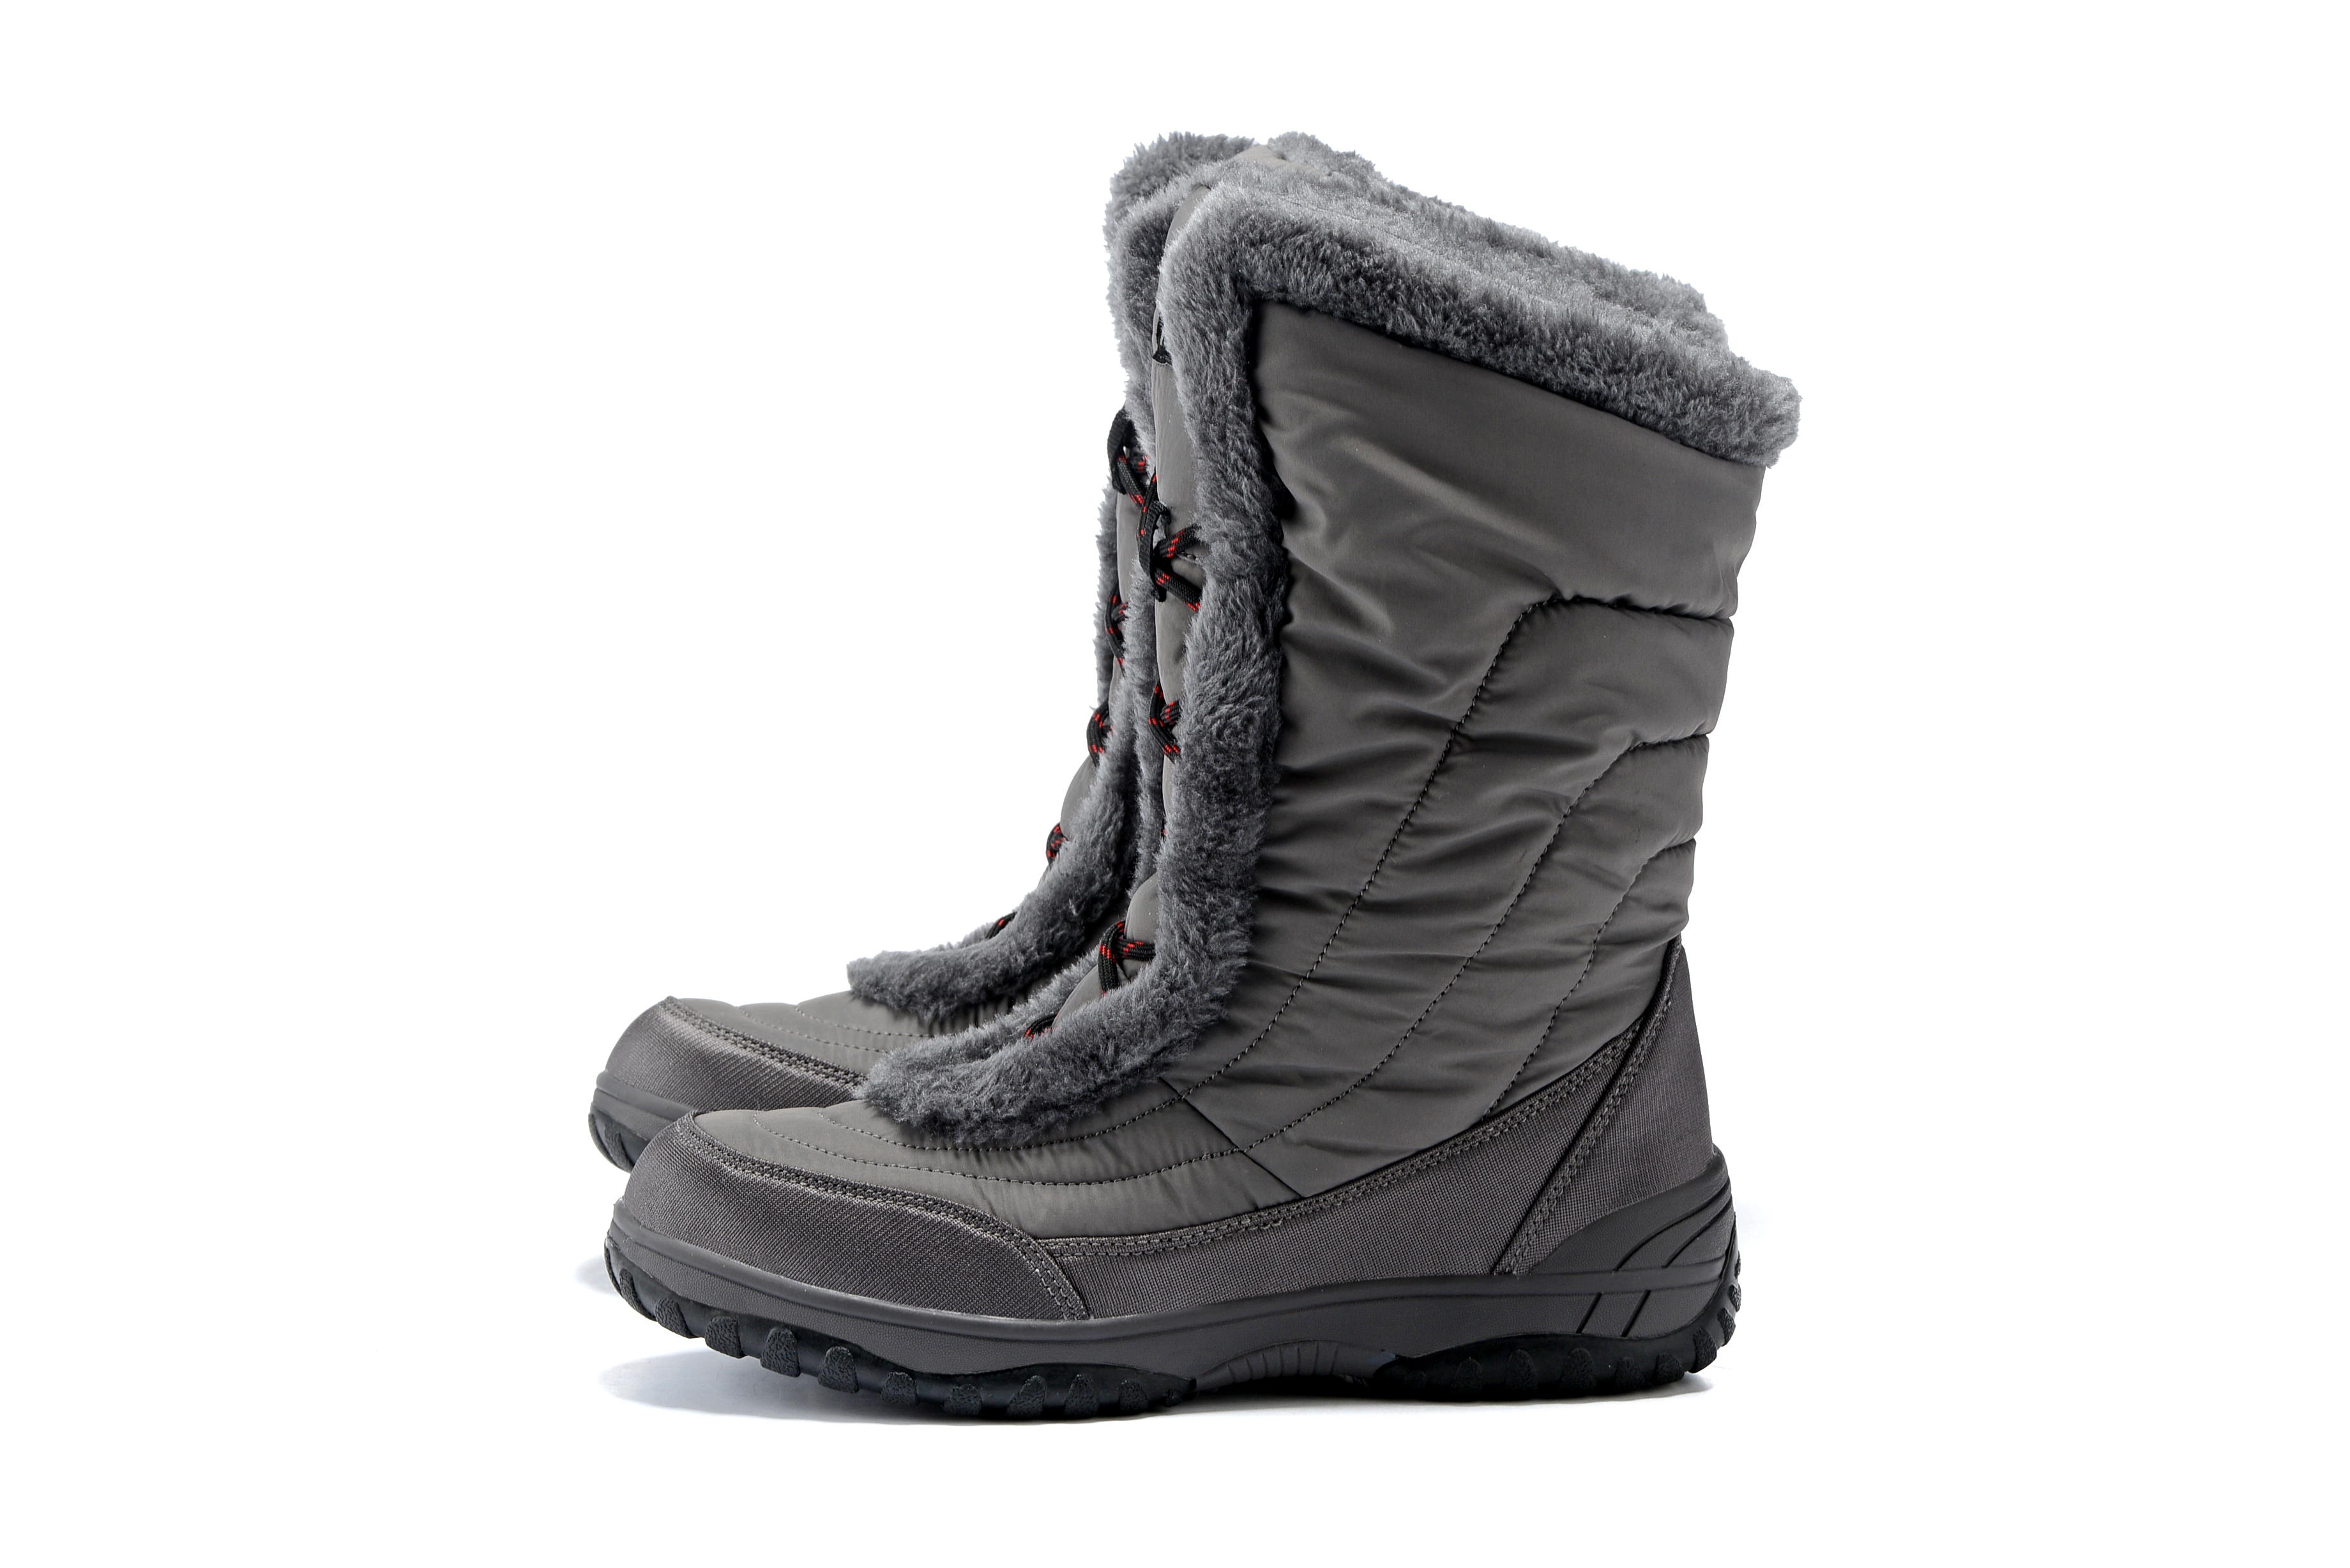 Chaussures de montagne neige - Ref 1067951 Image 5